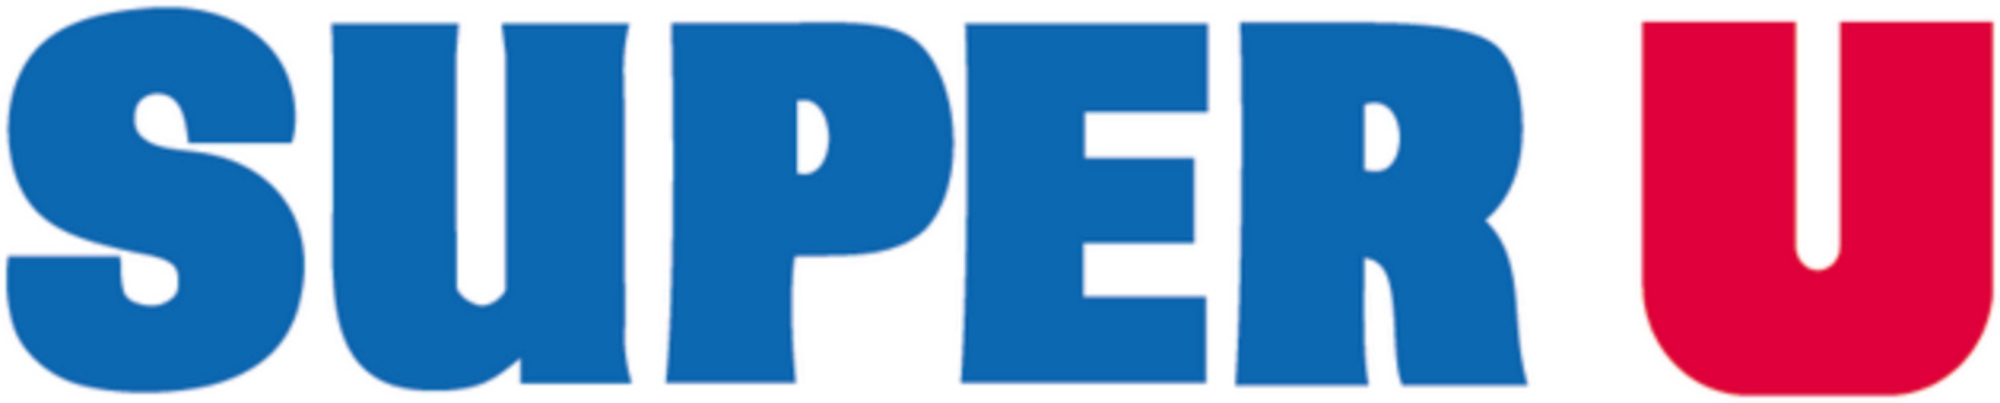 Super-U-logo.png